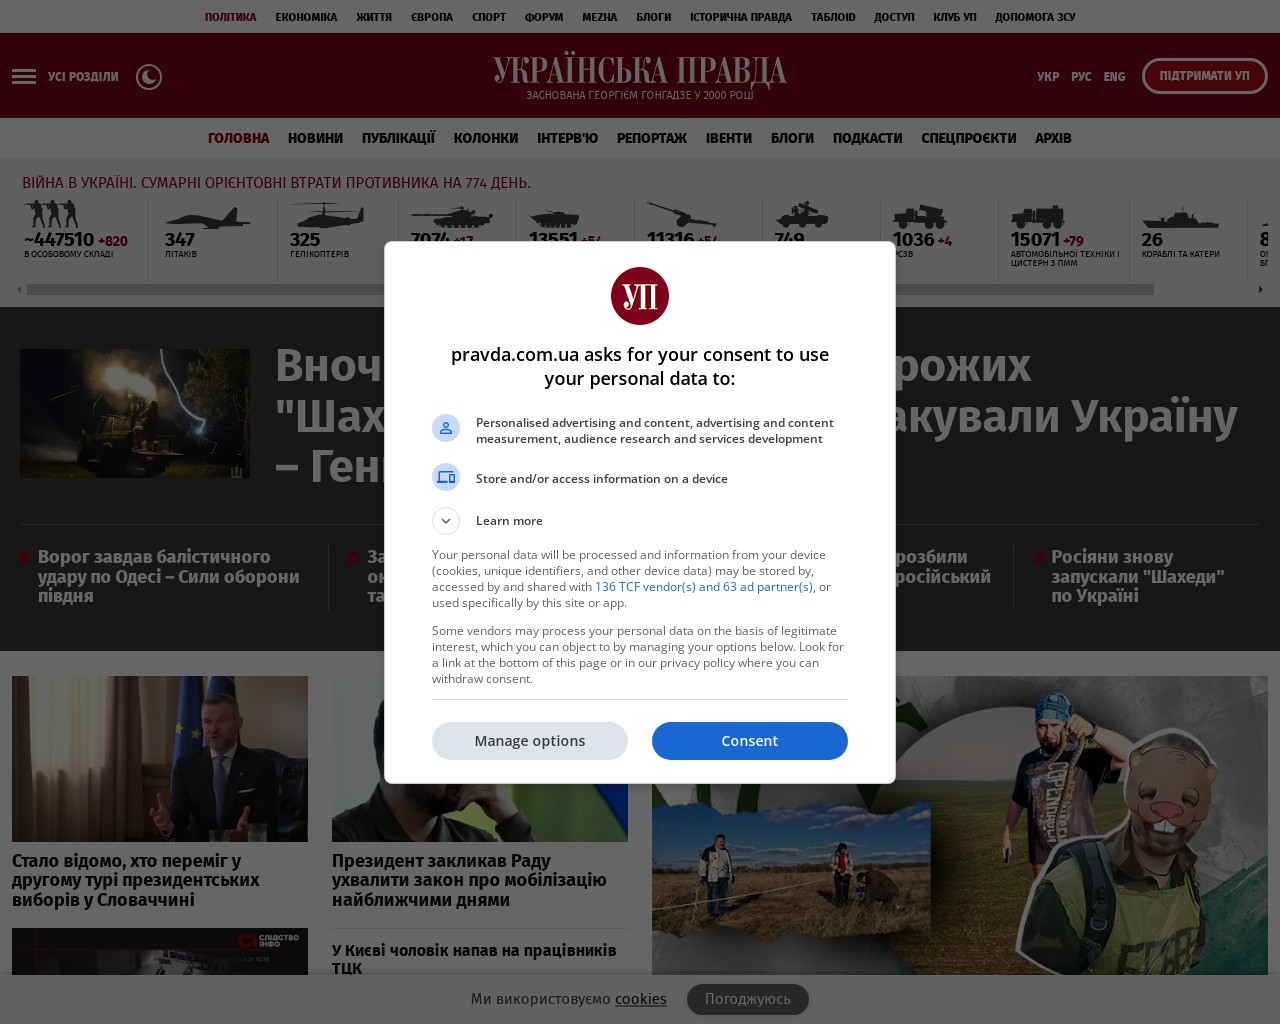 Изображение скриншота сайта - Одним з сайтів, де можна знайти інформацію про ТБ новини та ЗМІ, є Українська правда